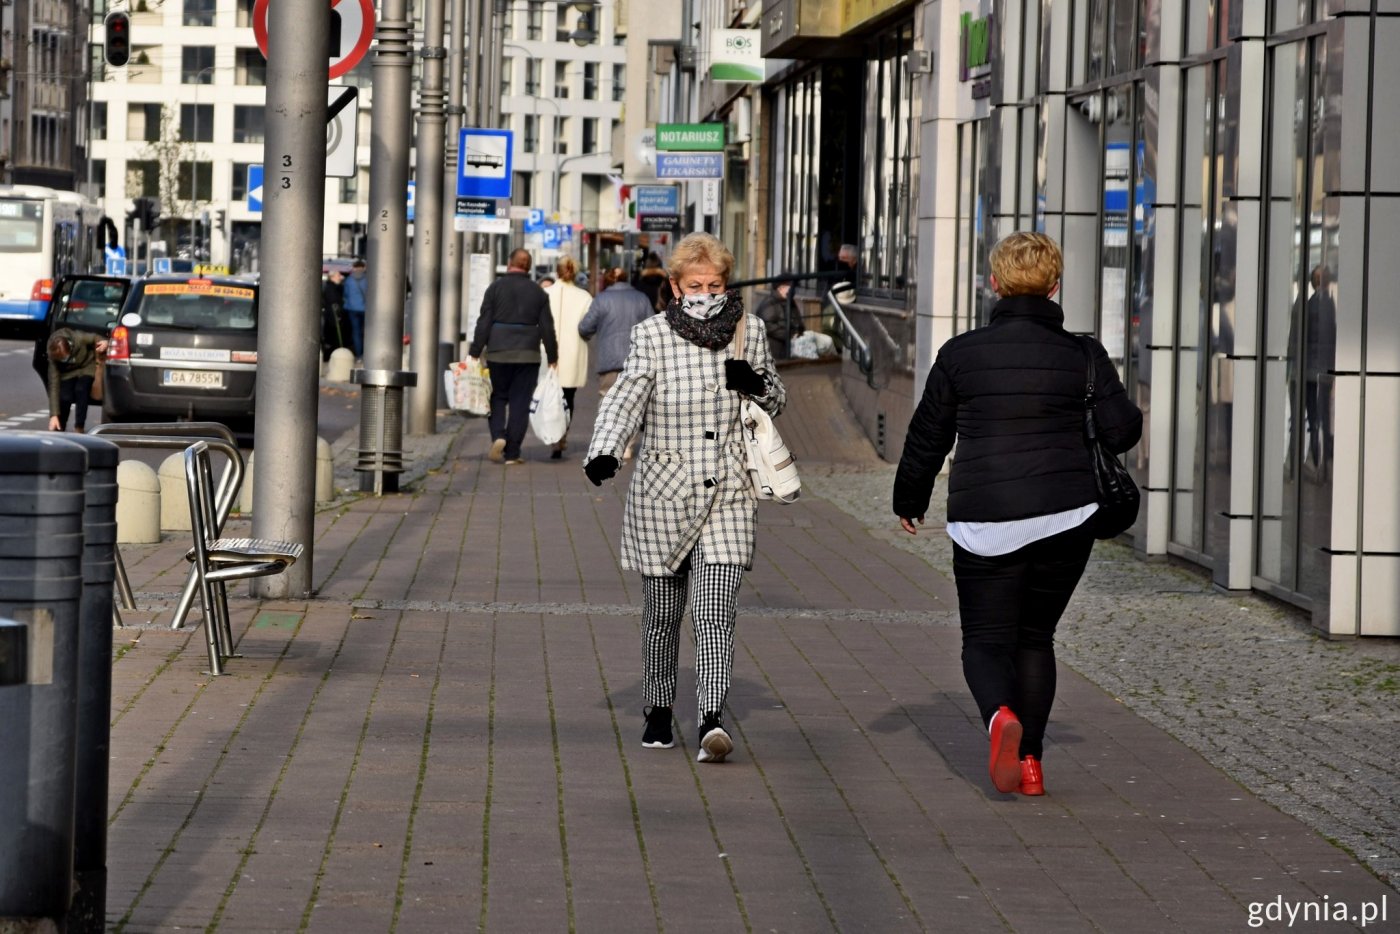 Plac Kaszubski w Gdyni. Ujęcie na chodnik, na którym widać przechodniów. Na pierwszym planie kobieta w maseczce zakrywającej usta i nos. W tle inni przechodnie oraz zabudowa placu Kaszubskiego w Gdyni.